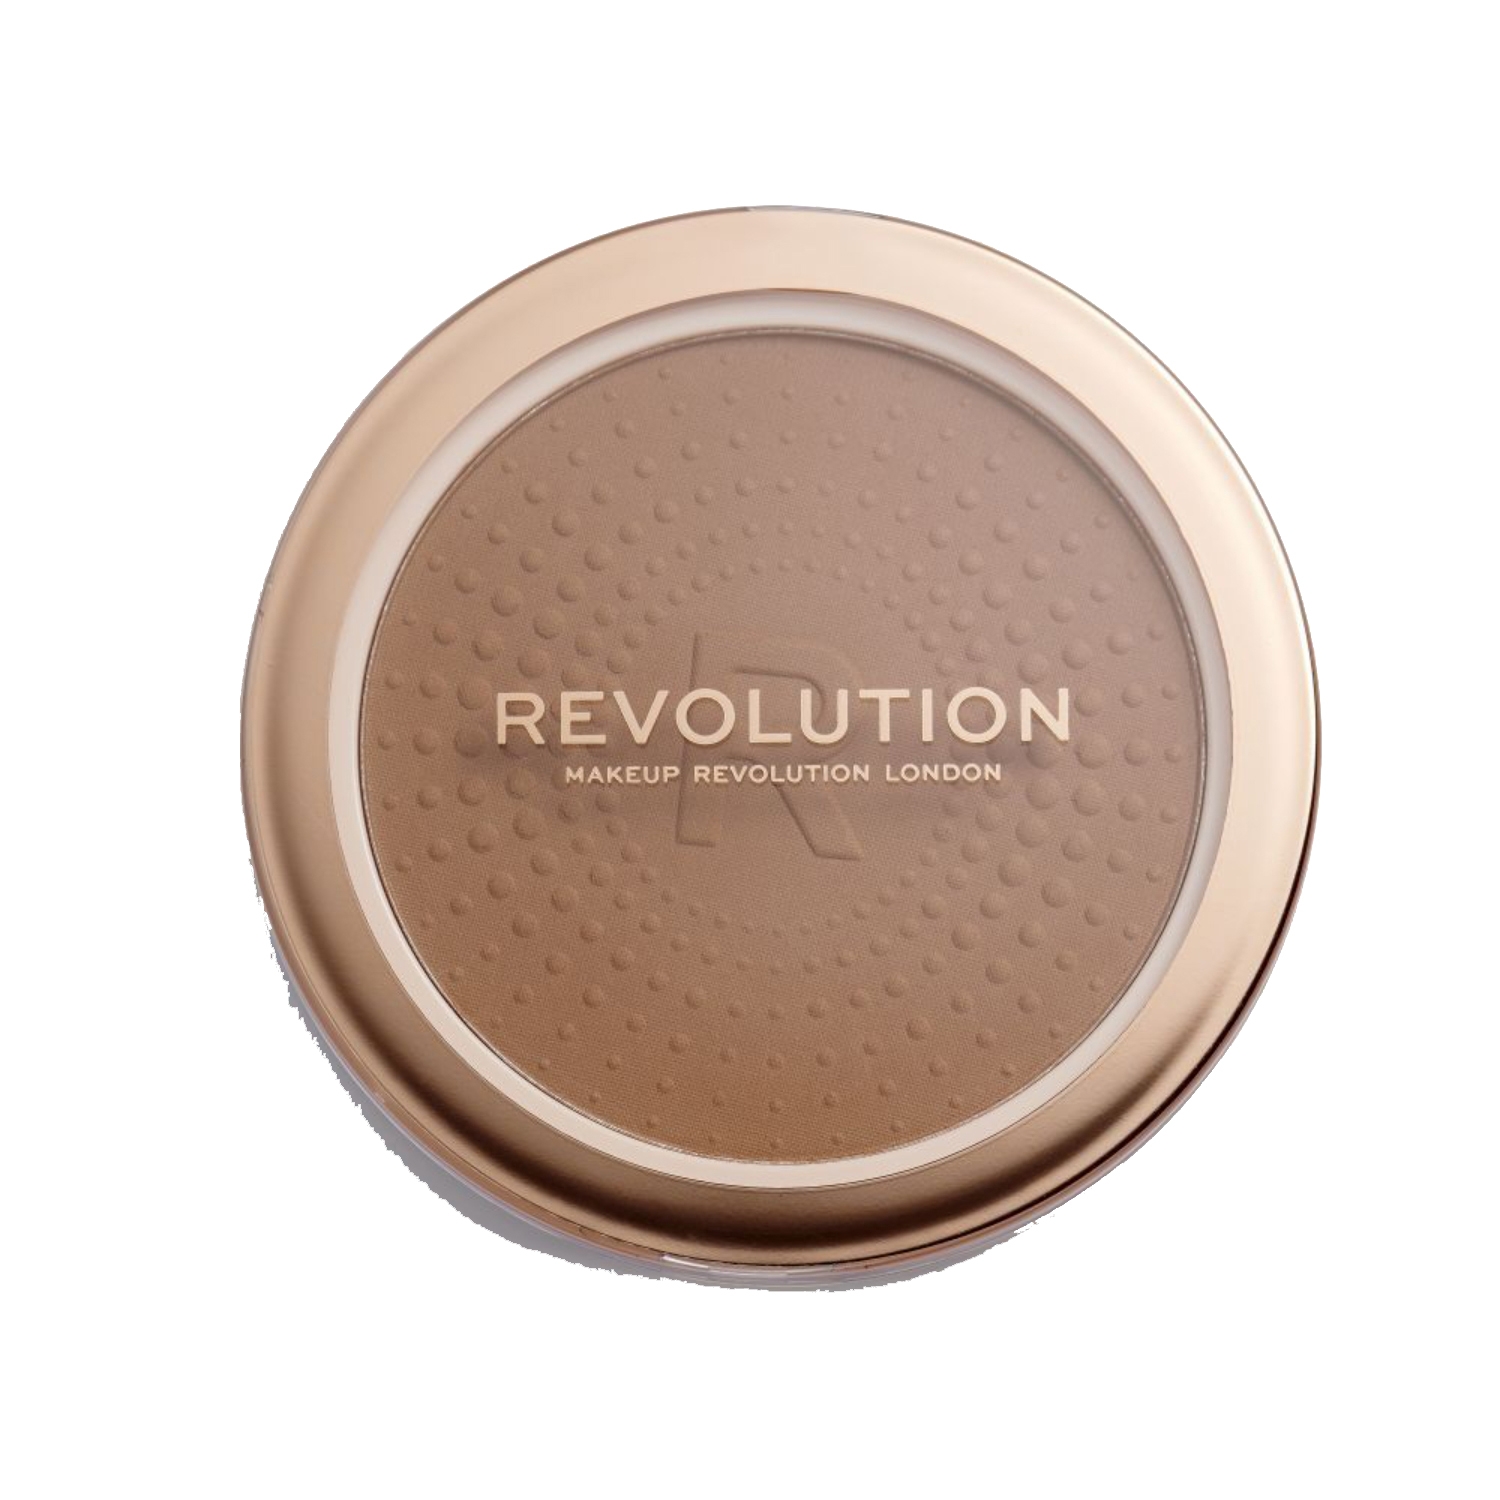 Makeup Revolution | Makeup Revolution Mega Bronzer - 02 Warm (15g)